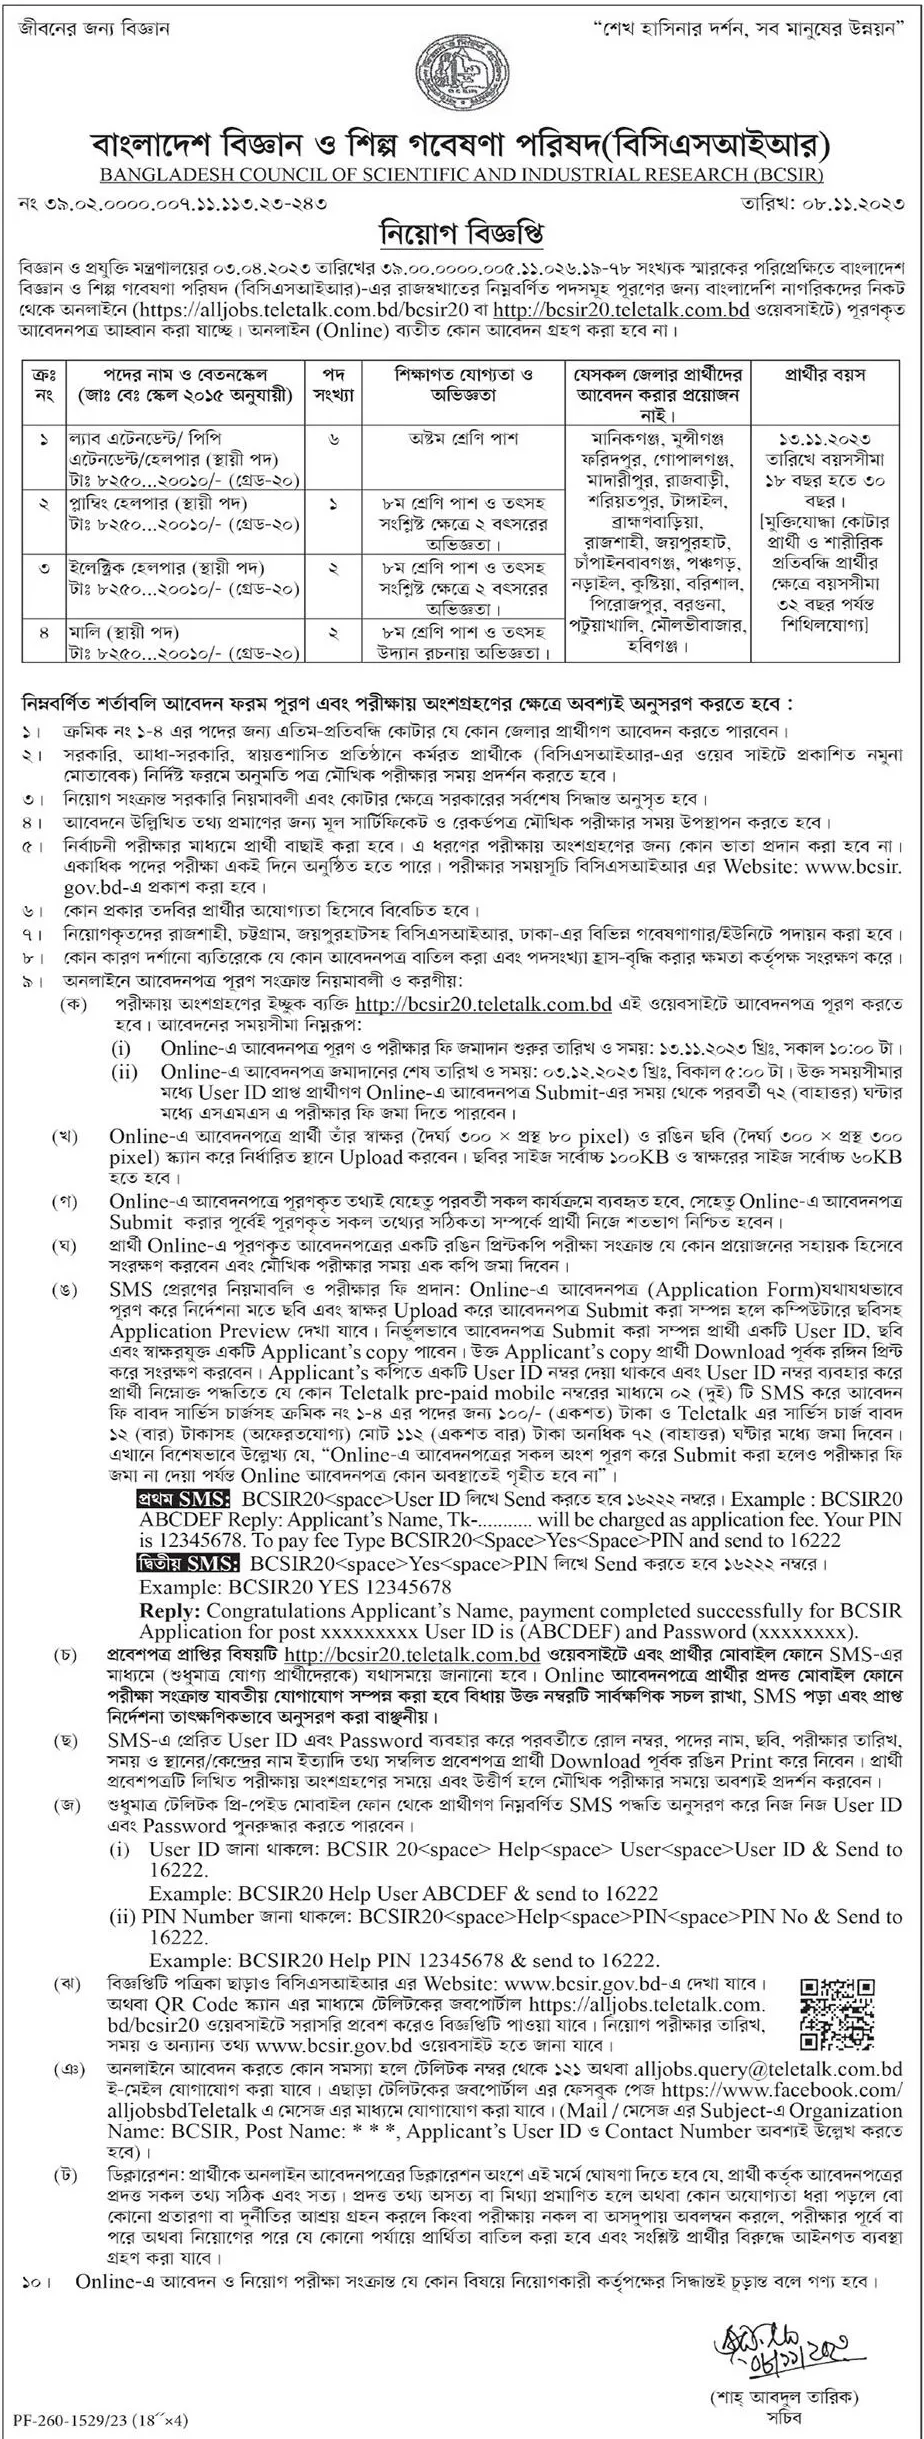 Bangladesh Council of Science and Industrial Research (bcsir) Job Circular 